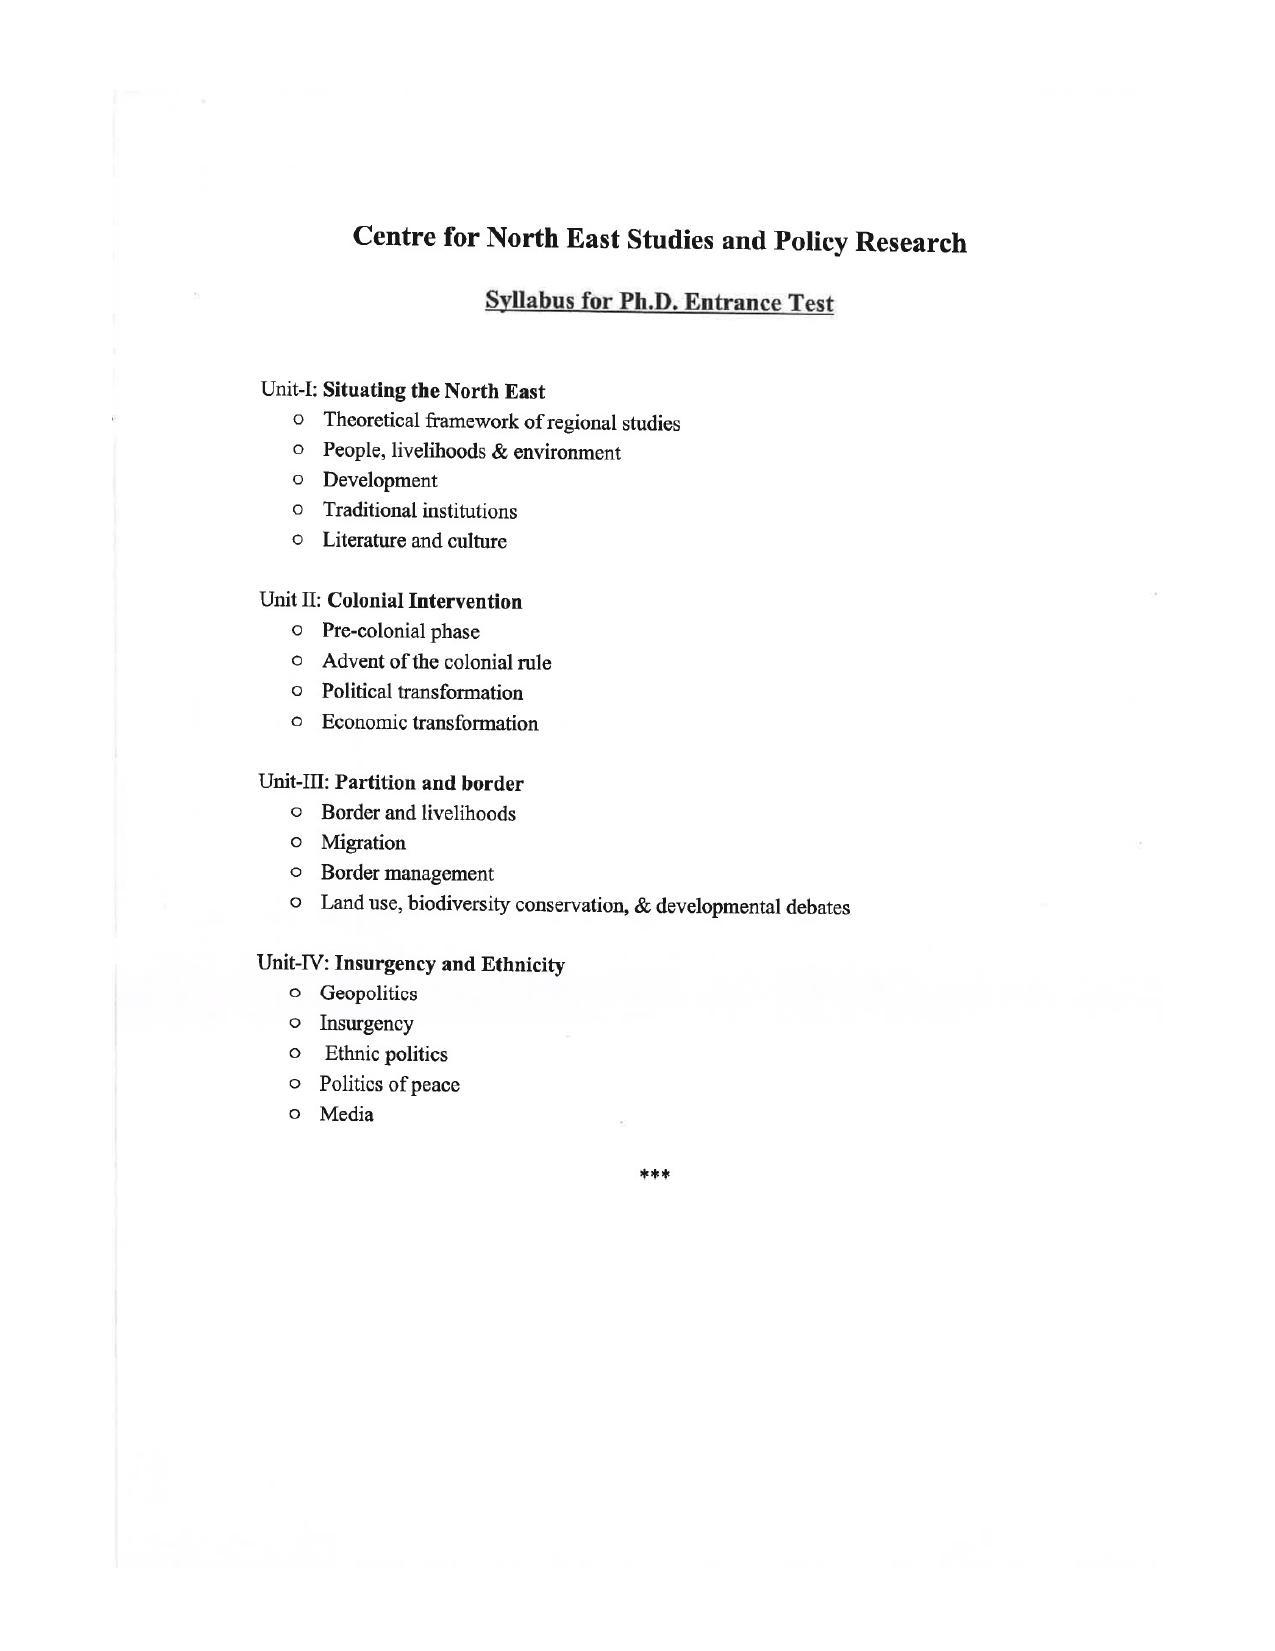 JMI Entrance Exam FACULTY OF SOCIAL SCIENCES Syllabus - Page 4